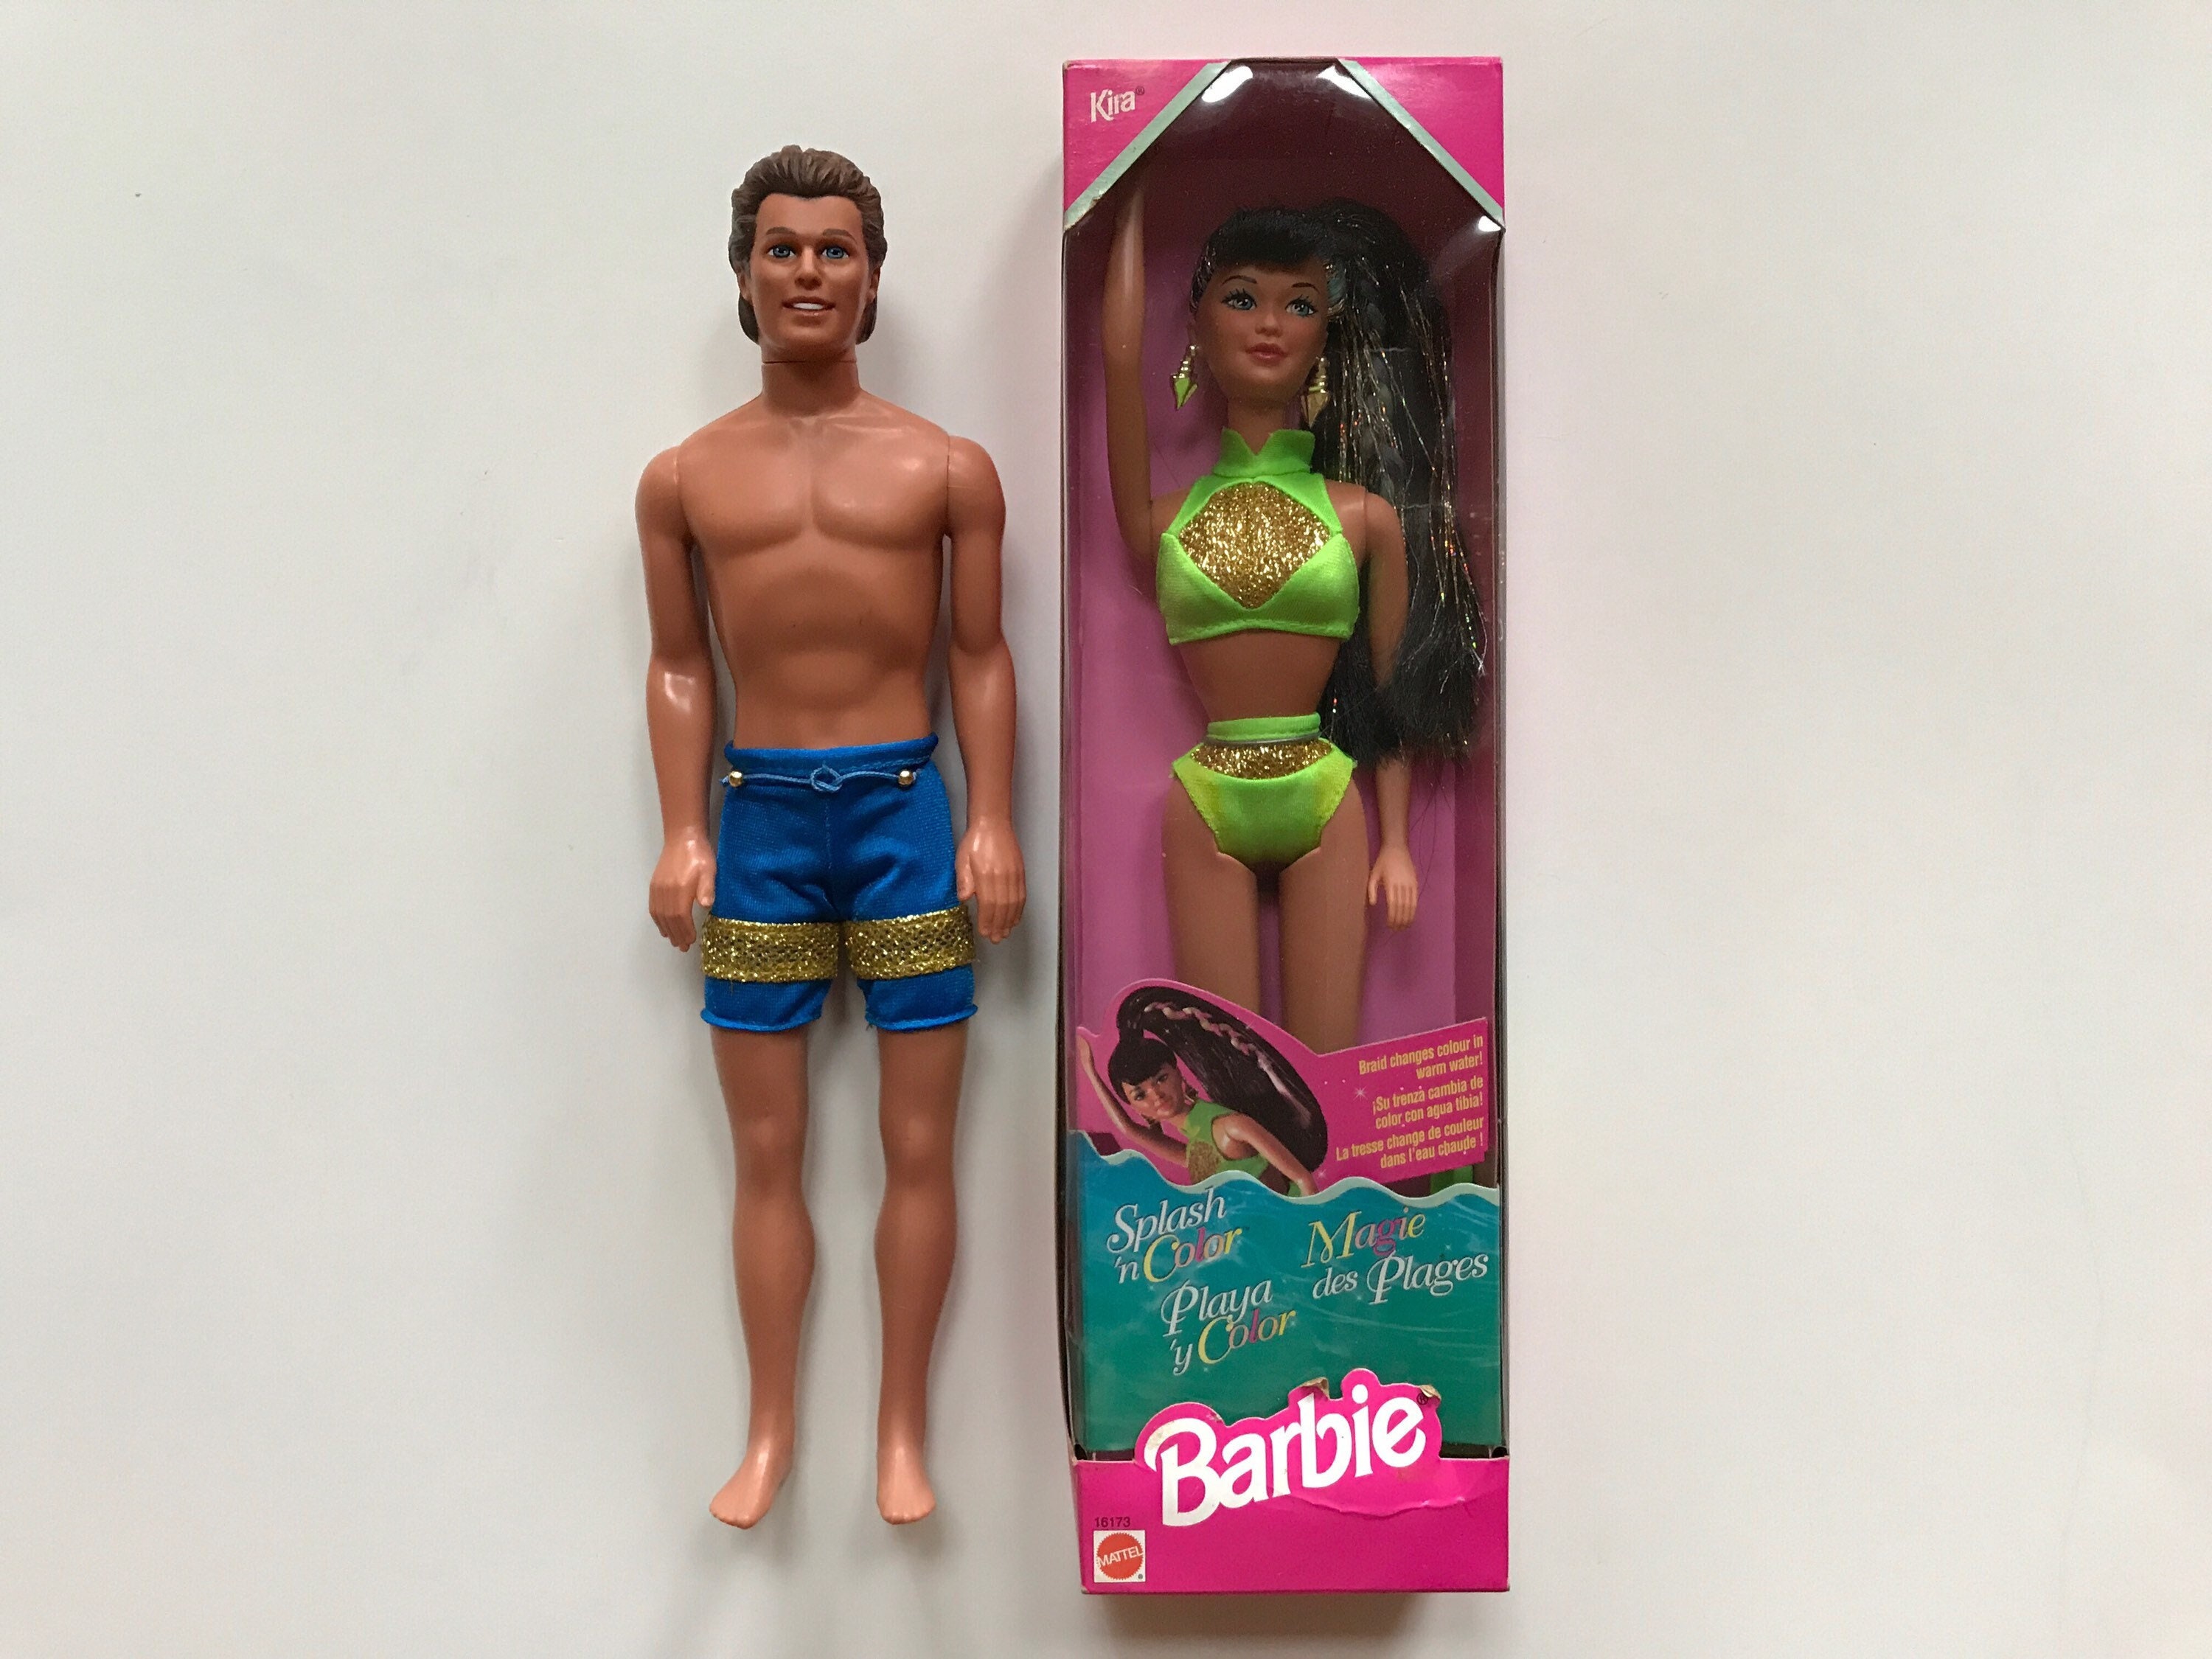 Mattel's New Ken Dolls Follow Barbie in Changing Body, Hair